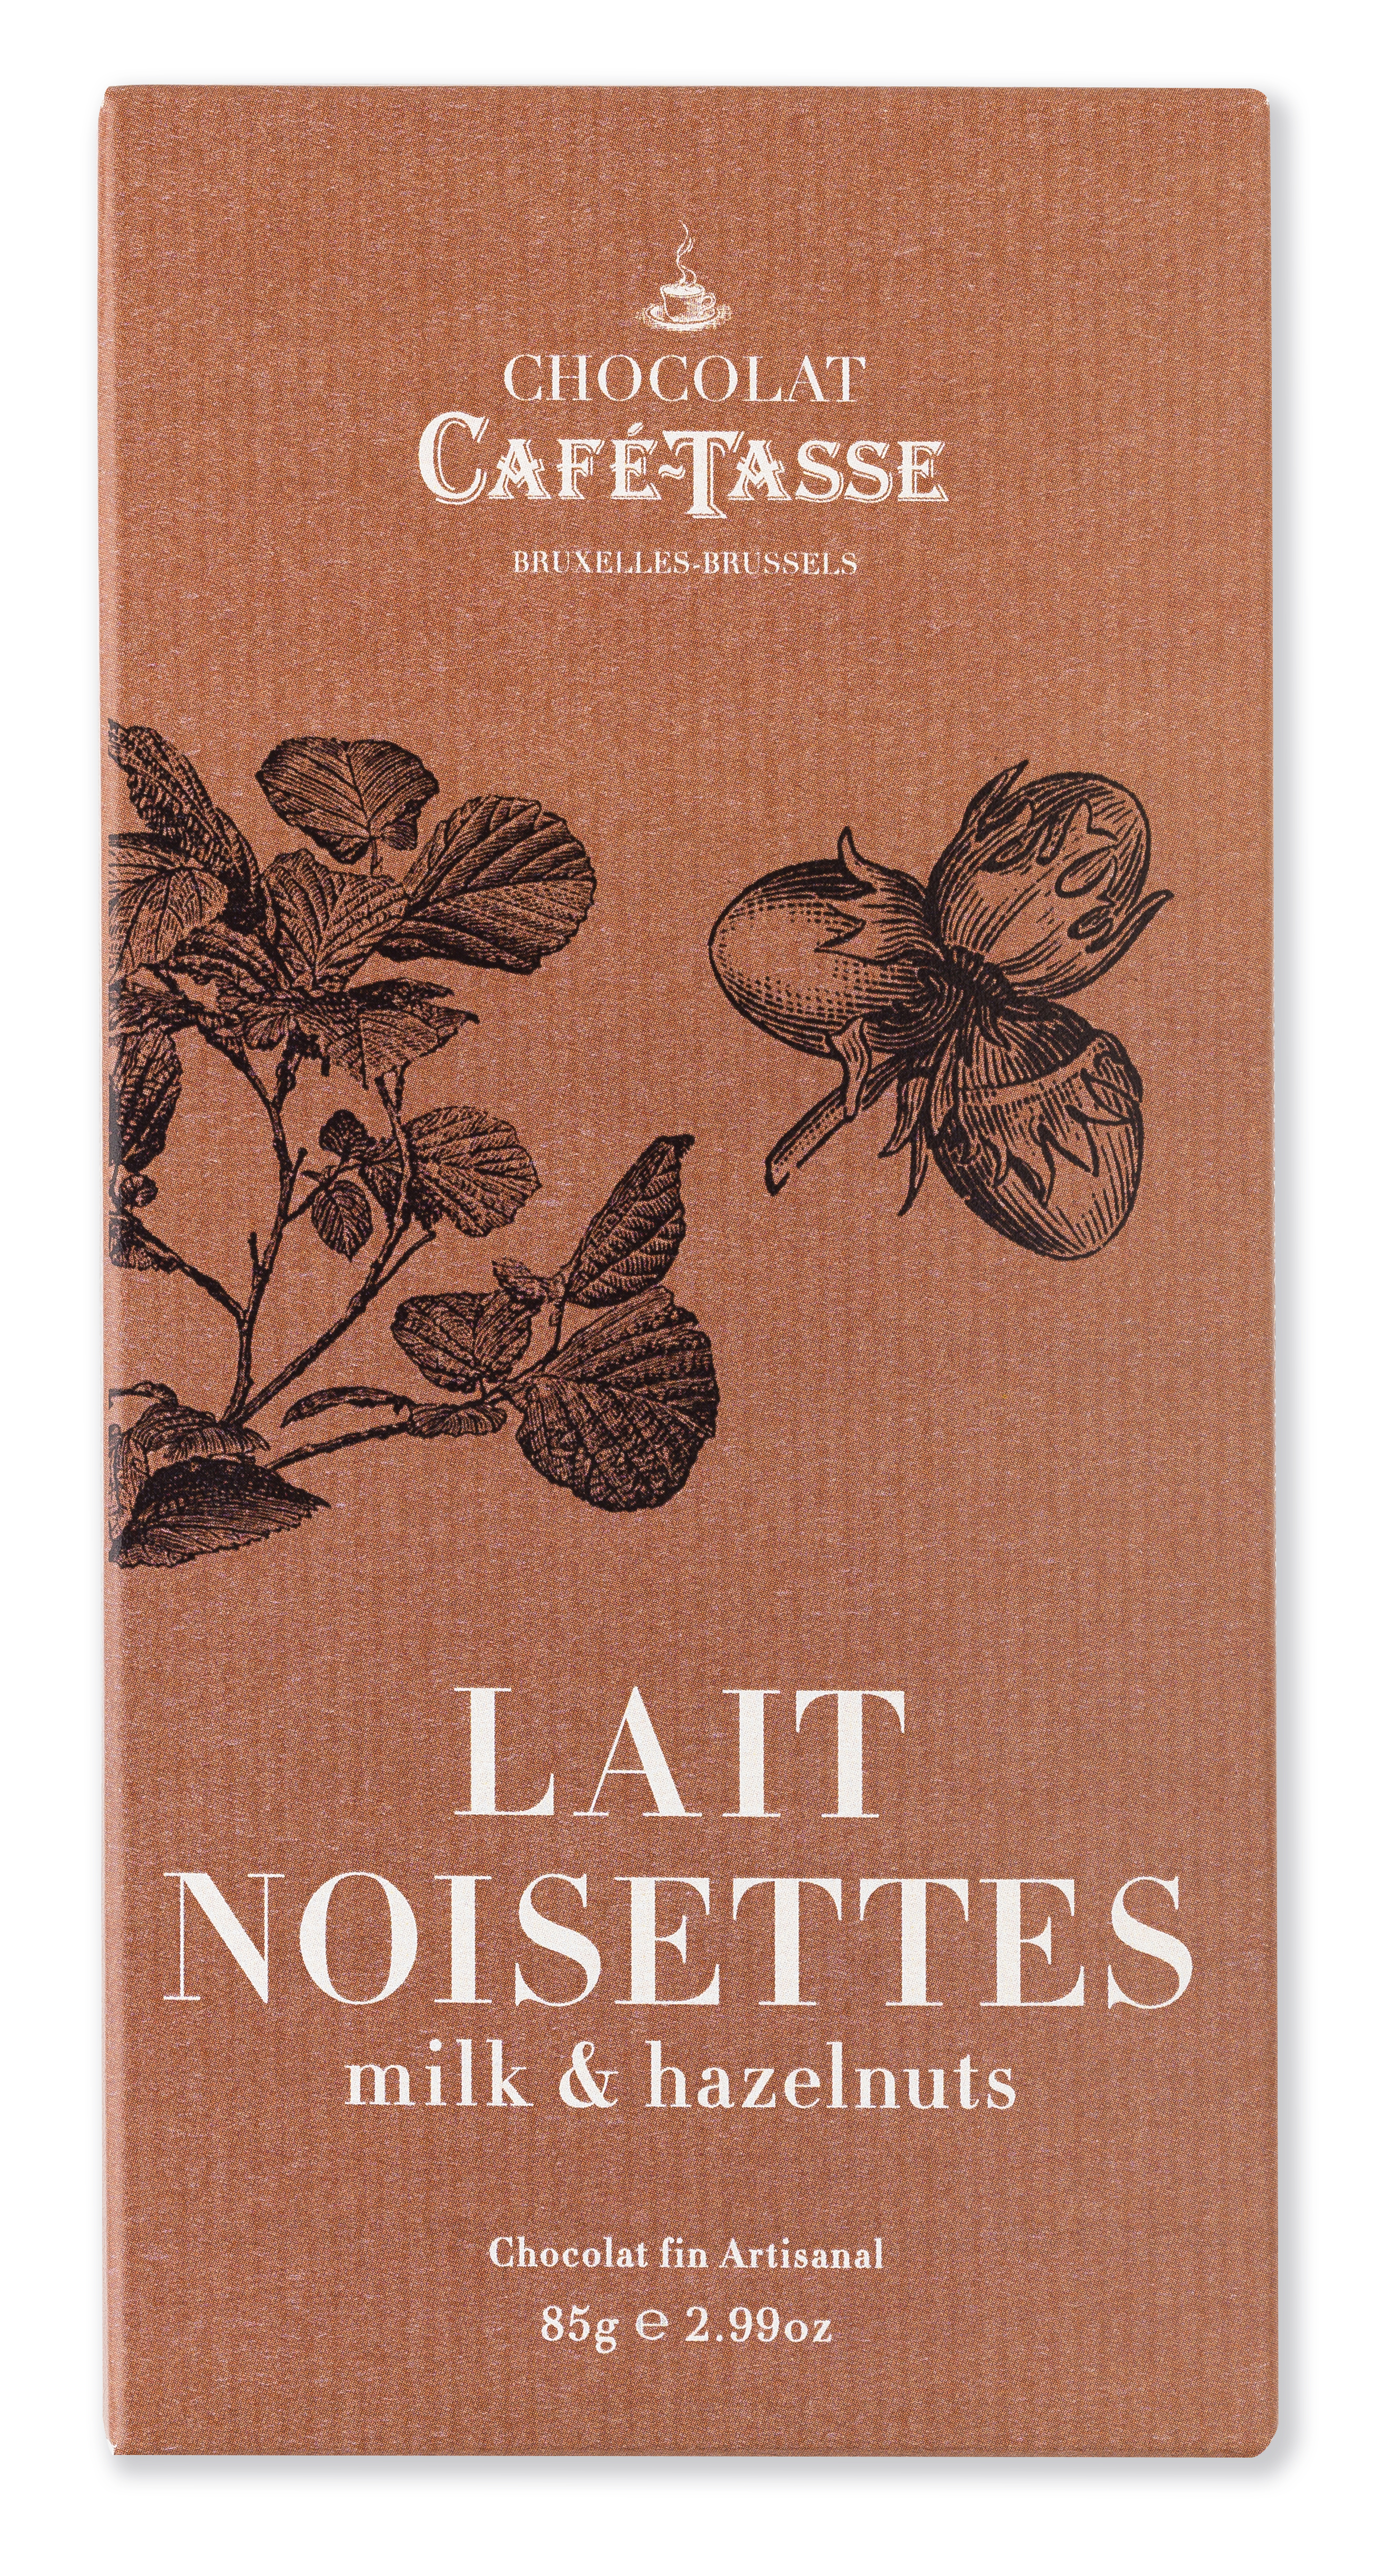 Lait & noisettes